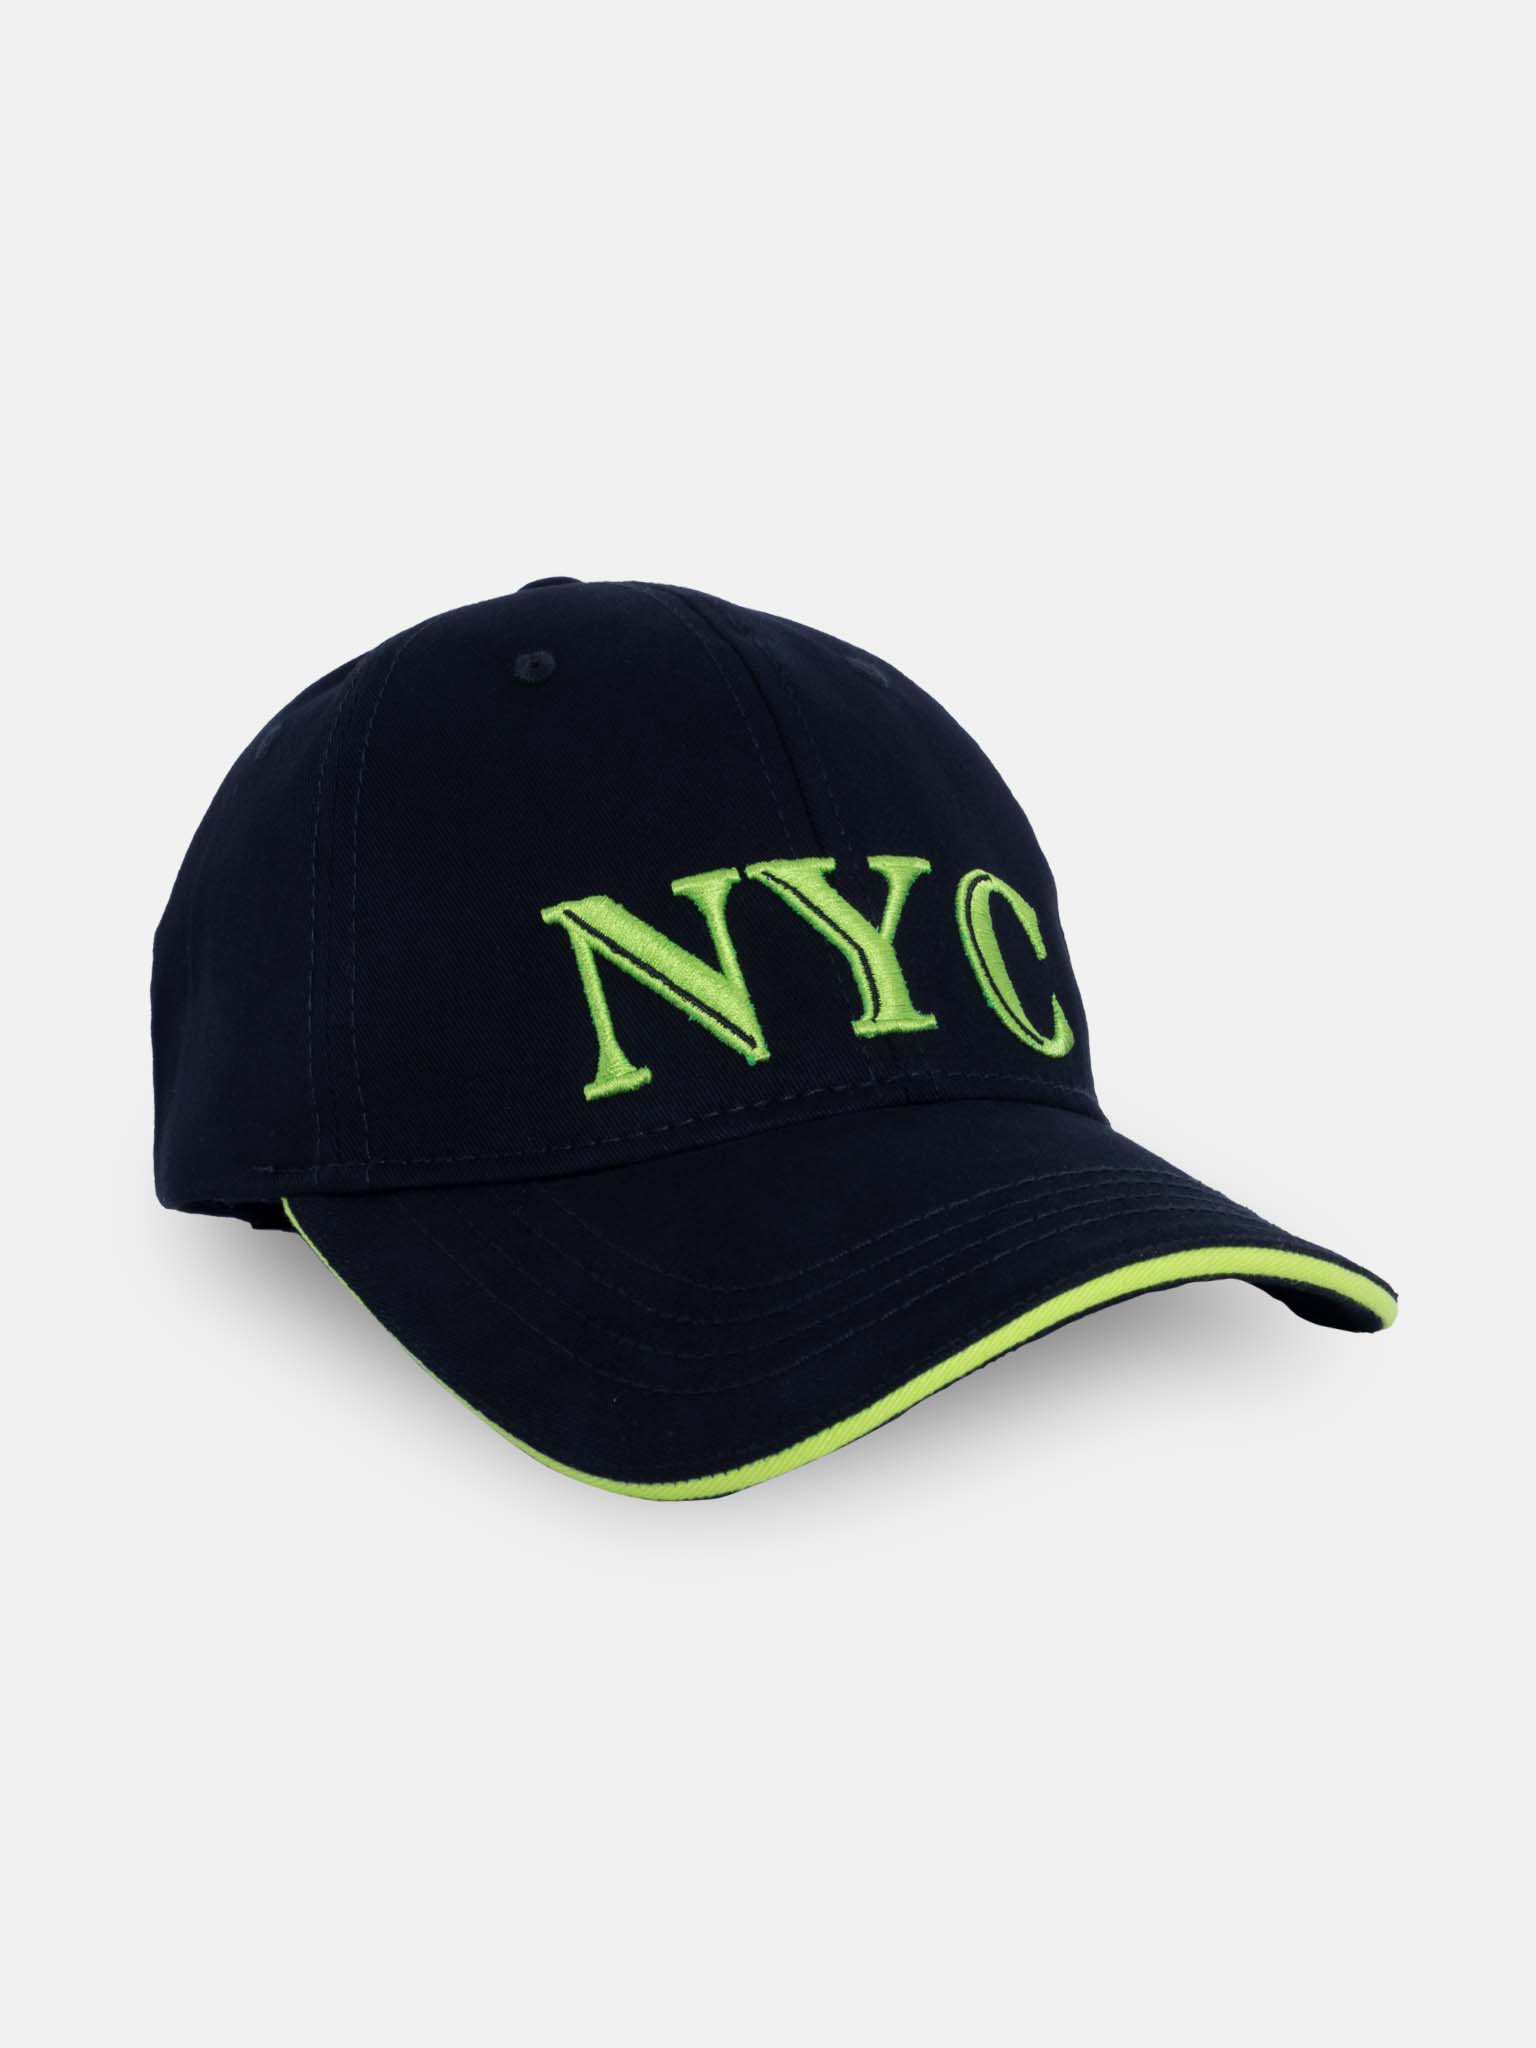 stylish caps